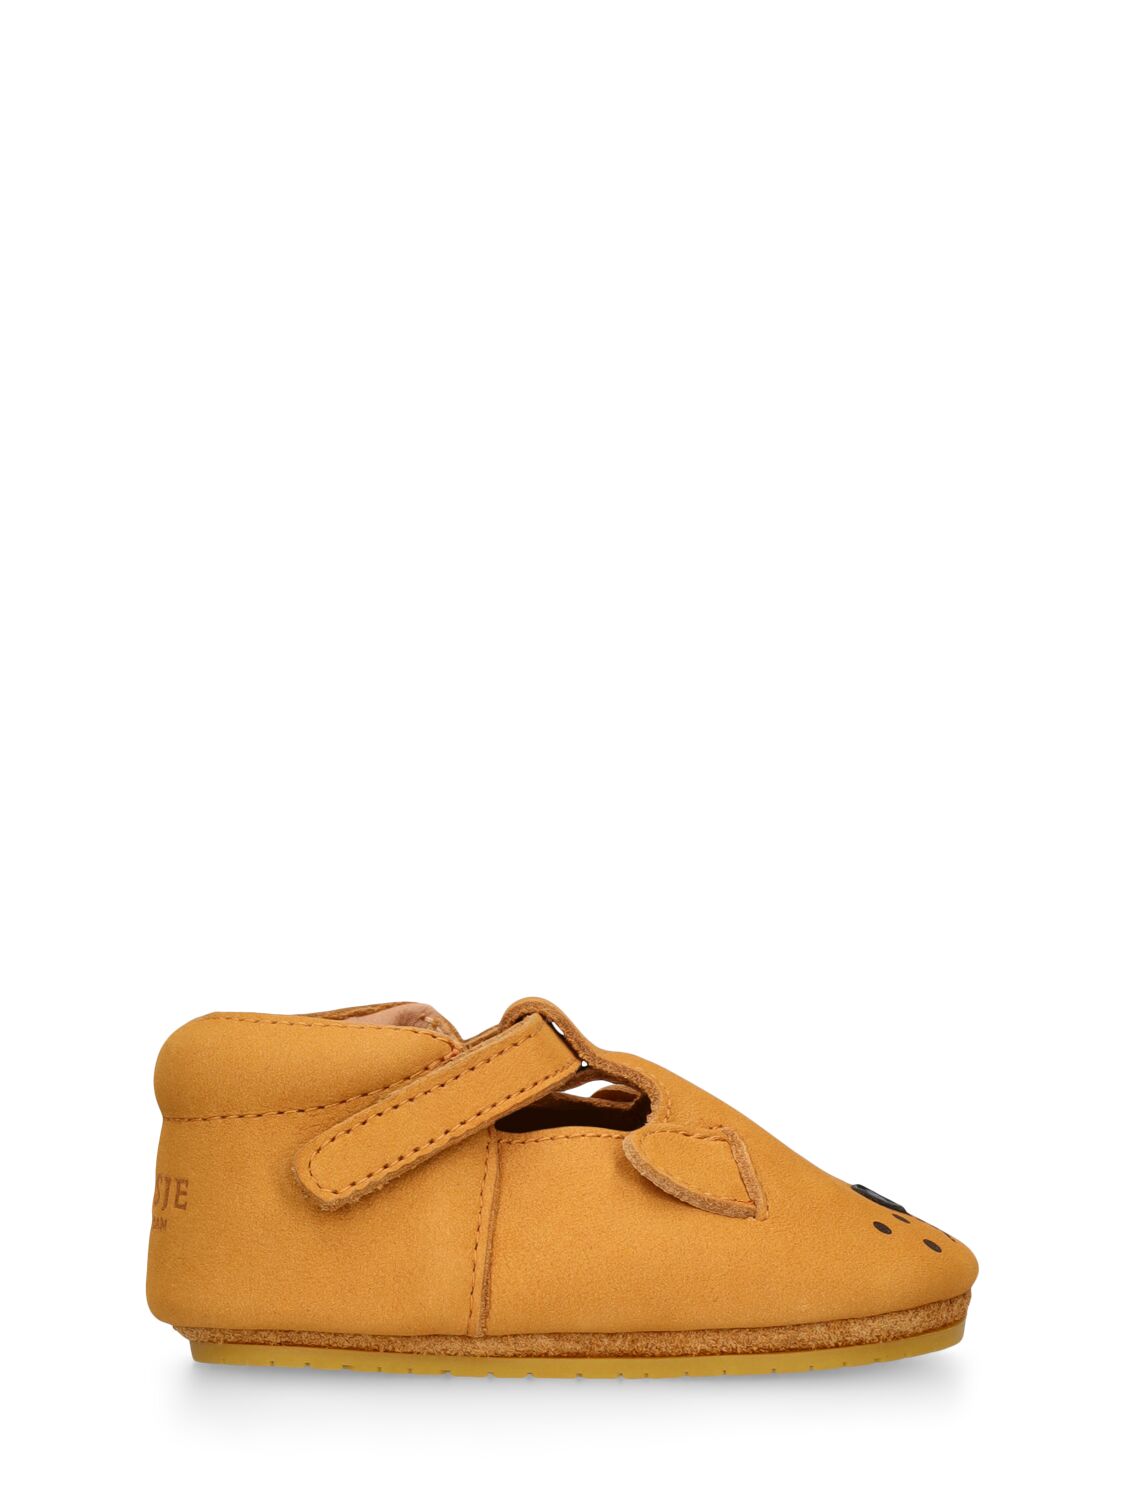 Donsje Babies' Lion Leather Pre-walker Shoes In Brown